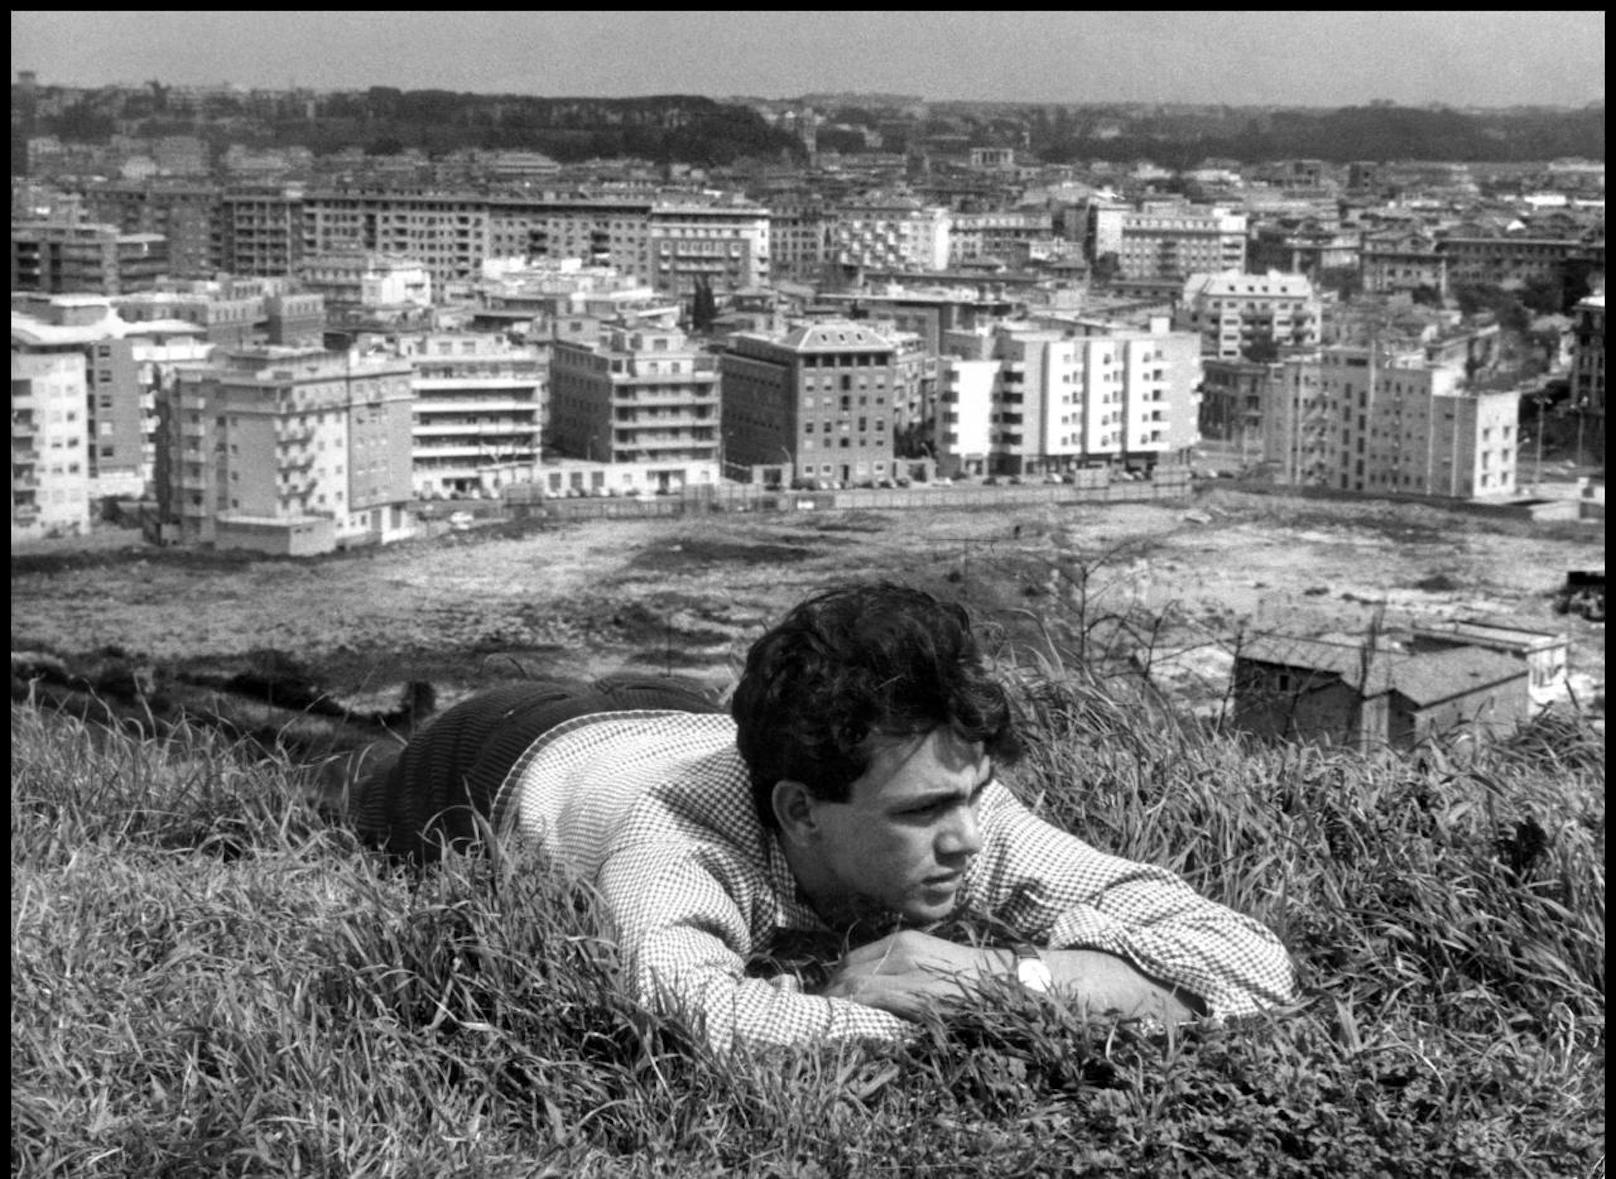 Das Debüt: Mit "La commare secca" legte Bernardo Bertolucci 1962 seinen ersten Spielfilm vor. Er verfasste auch das Drehbuch.